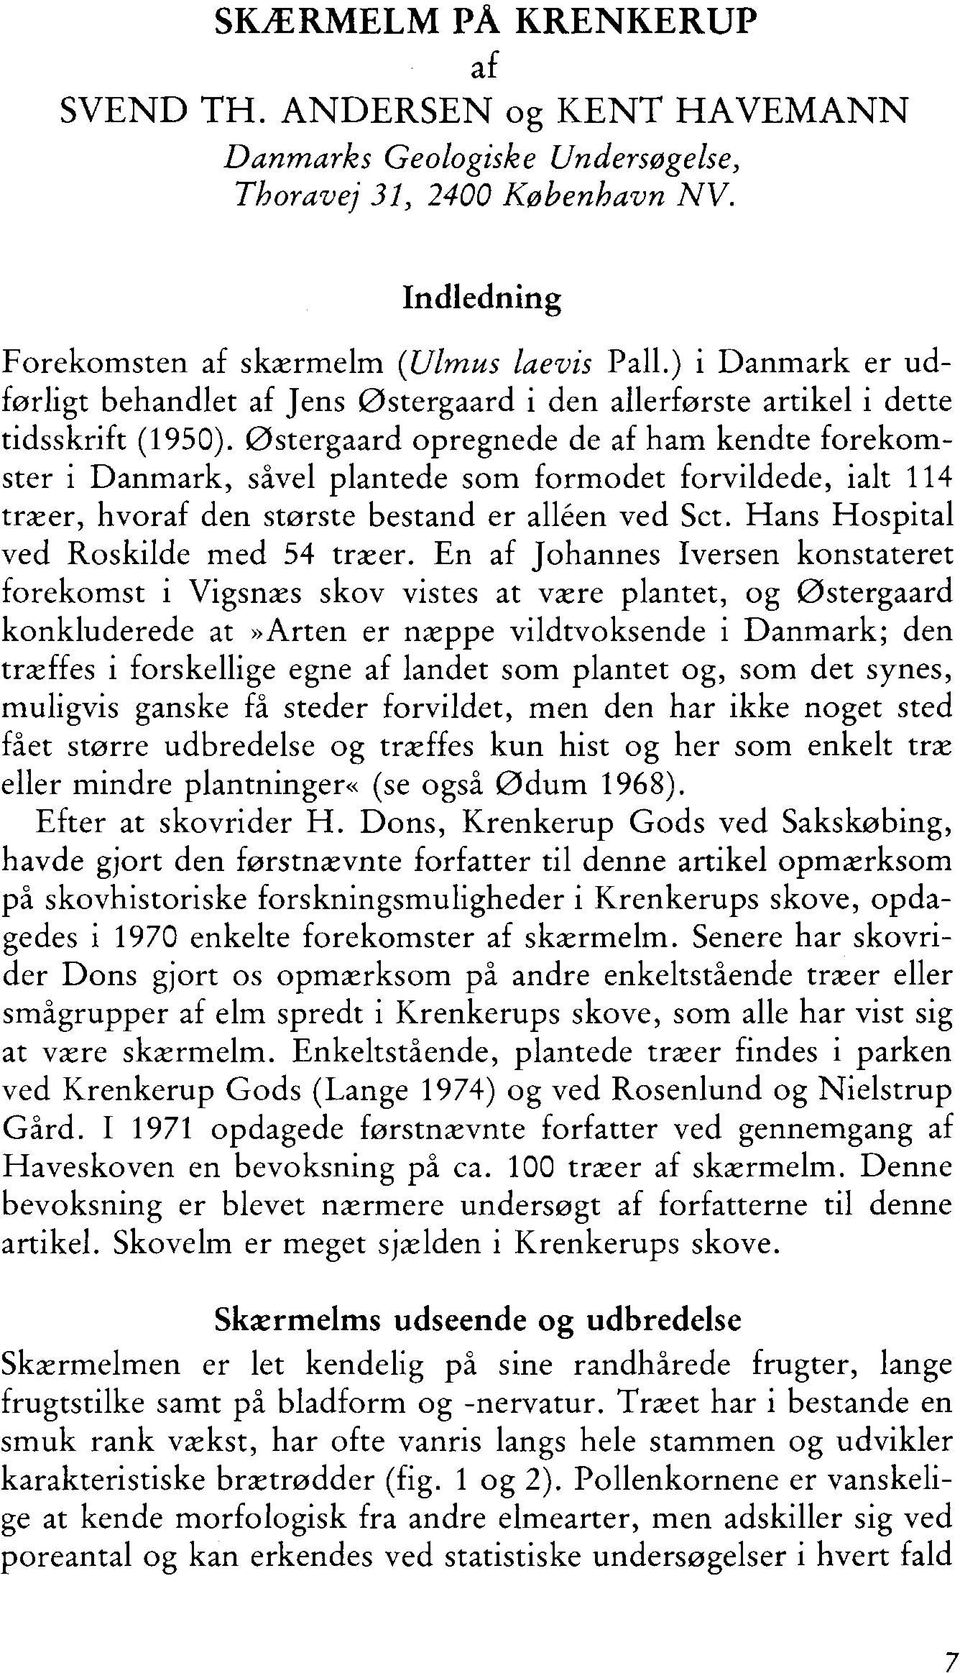 Østergaard pregnede de af ham kendte frekmster i Danmark, såvel plantede sm frmdet frvildede, ialt 114 træer, hvraf den største bestand er alléen ved Set. Hans Hspital ved Rskilde med 54 træer.